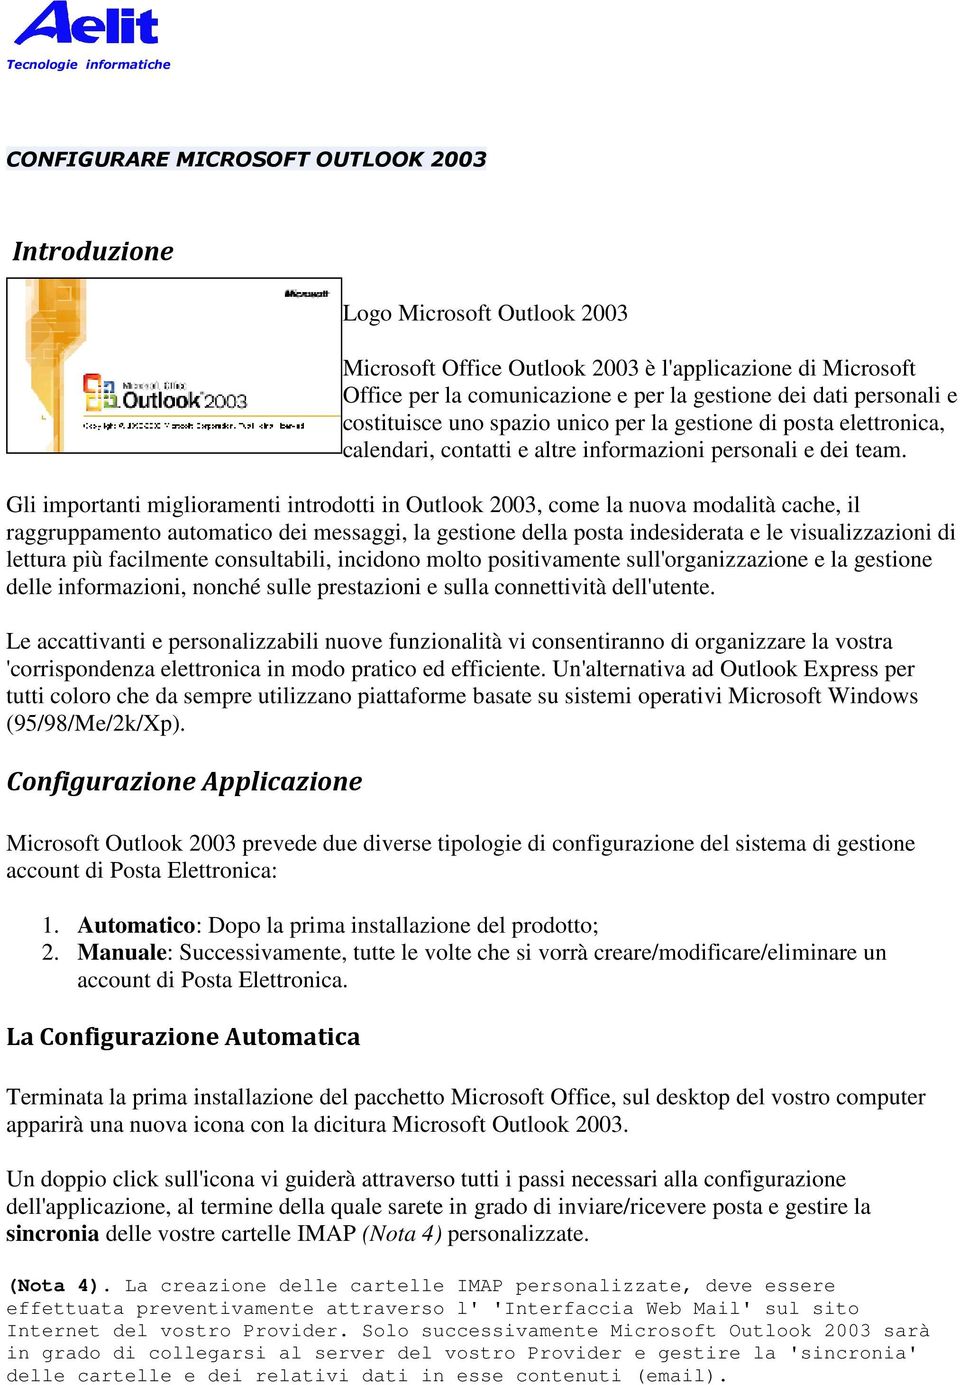 Gli importanti miglioramenti introdotti in Outlook 2003, come la nuova modalità cache, il raggruppamento automatico dei messaggi, la gestione della posta indesiderata e le visualizzazioni di lettura